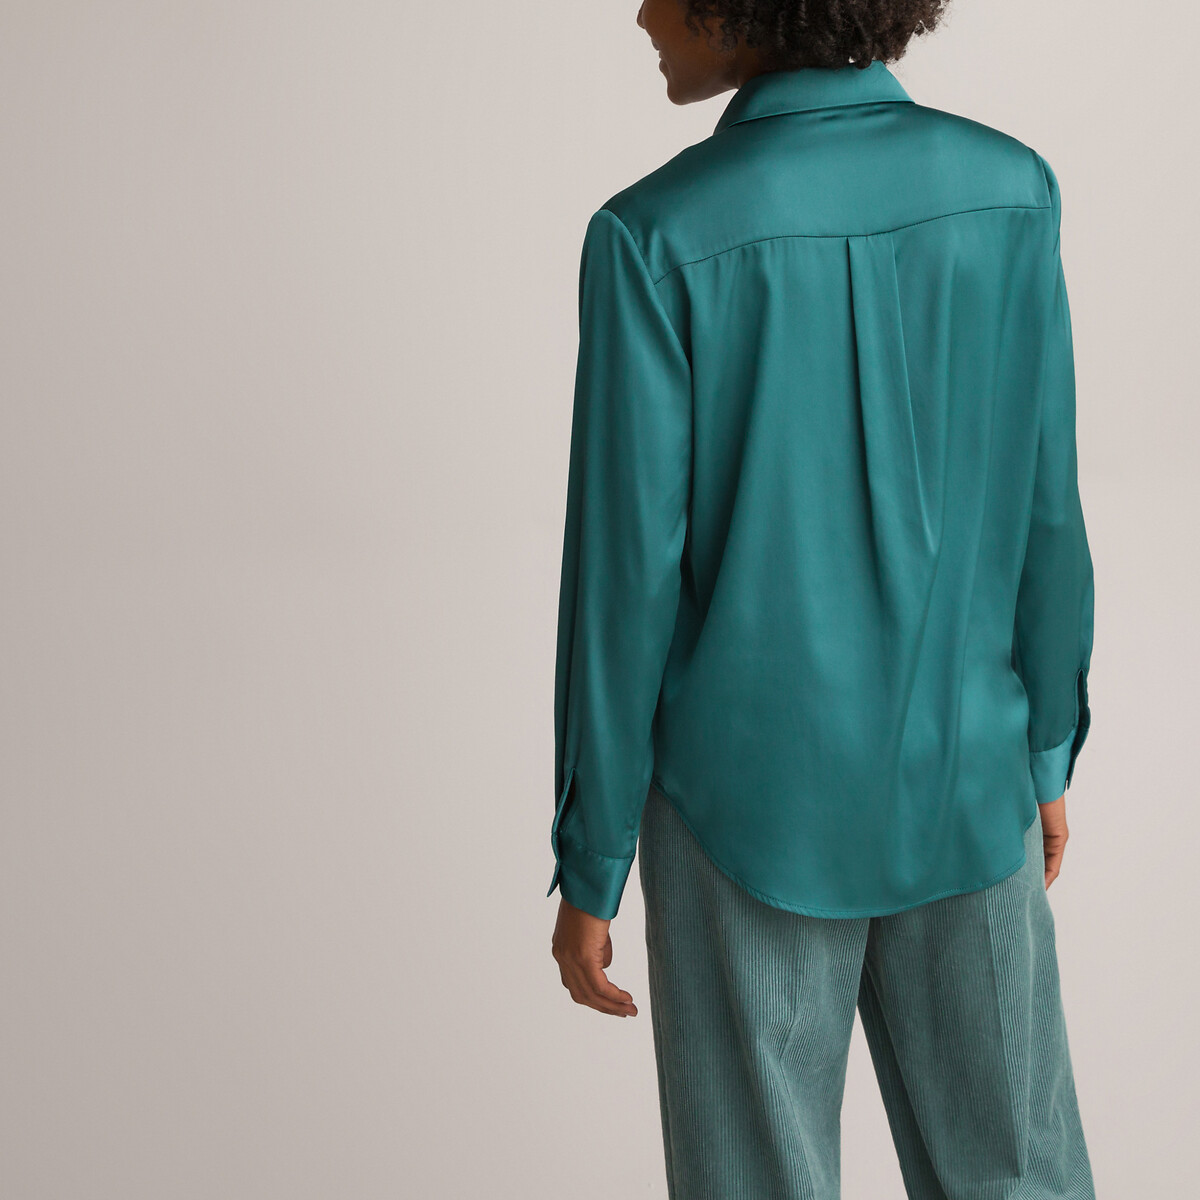 Рубашка С длинными рукавами атласная 44 (FR) - 50 (RUS) зеленый LaRedoute, размер 44 (FR) - 50 (RUS) Рубашка С длинными рукавами атласная 44 (FR) - 50 (RUS) зеленый - фото 4